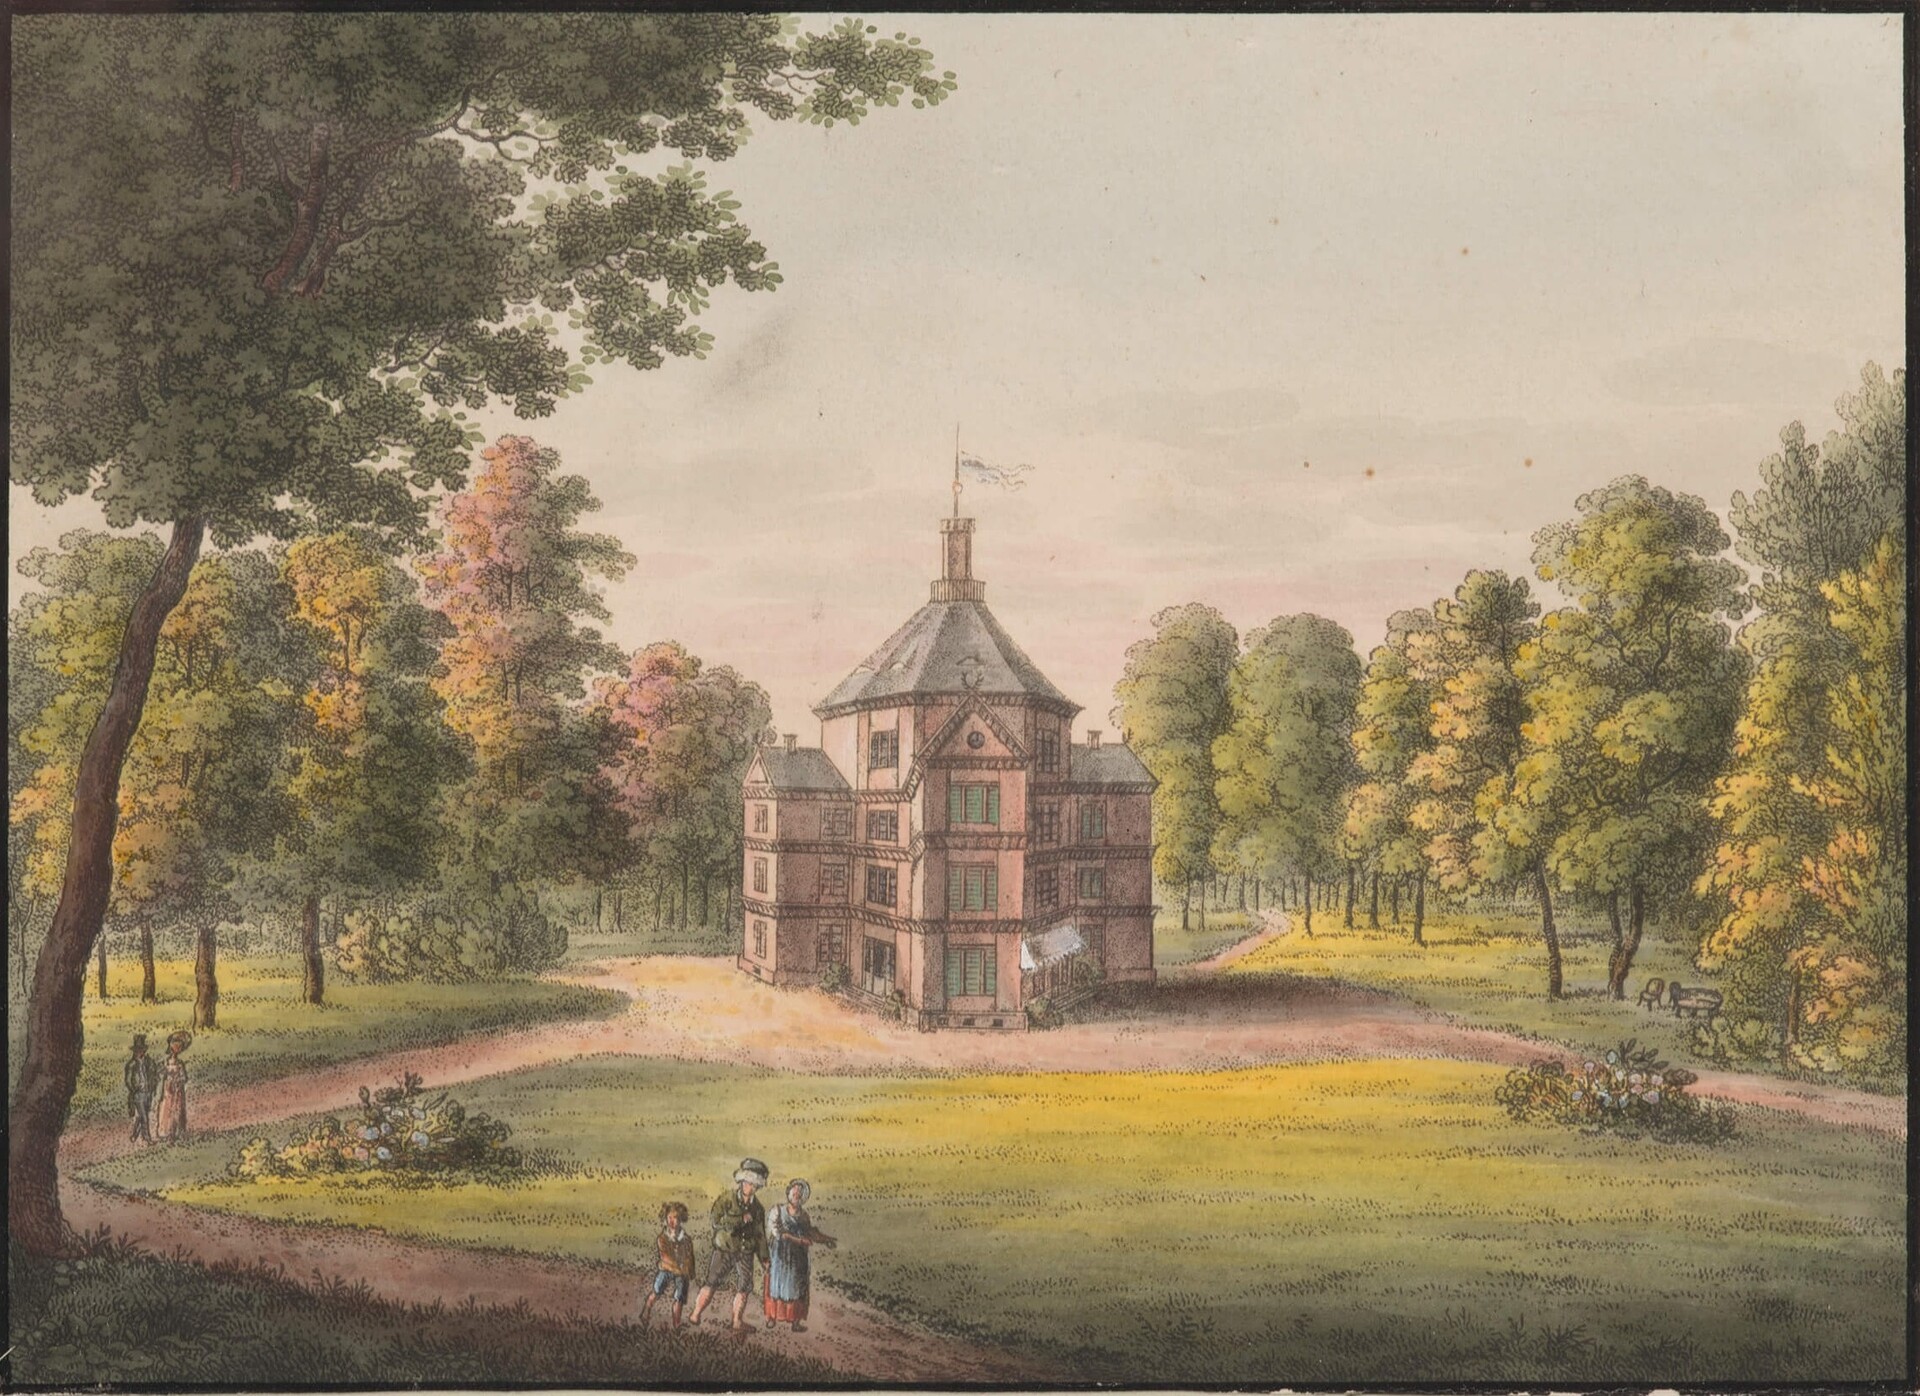  Widok Antonina koło Ostrowa, w Wielkim Księstwie Poznańskim; Friedrich August Tittel; 1828 r.; kolekcja Fundacji Trzy Trąby 